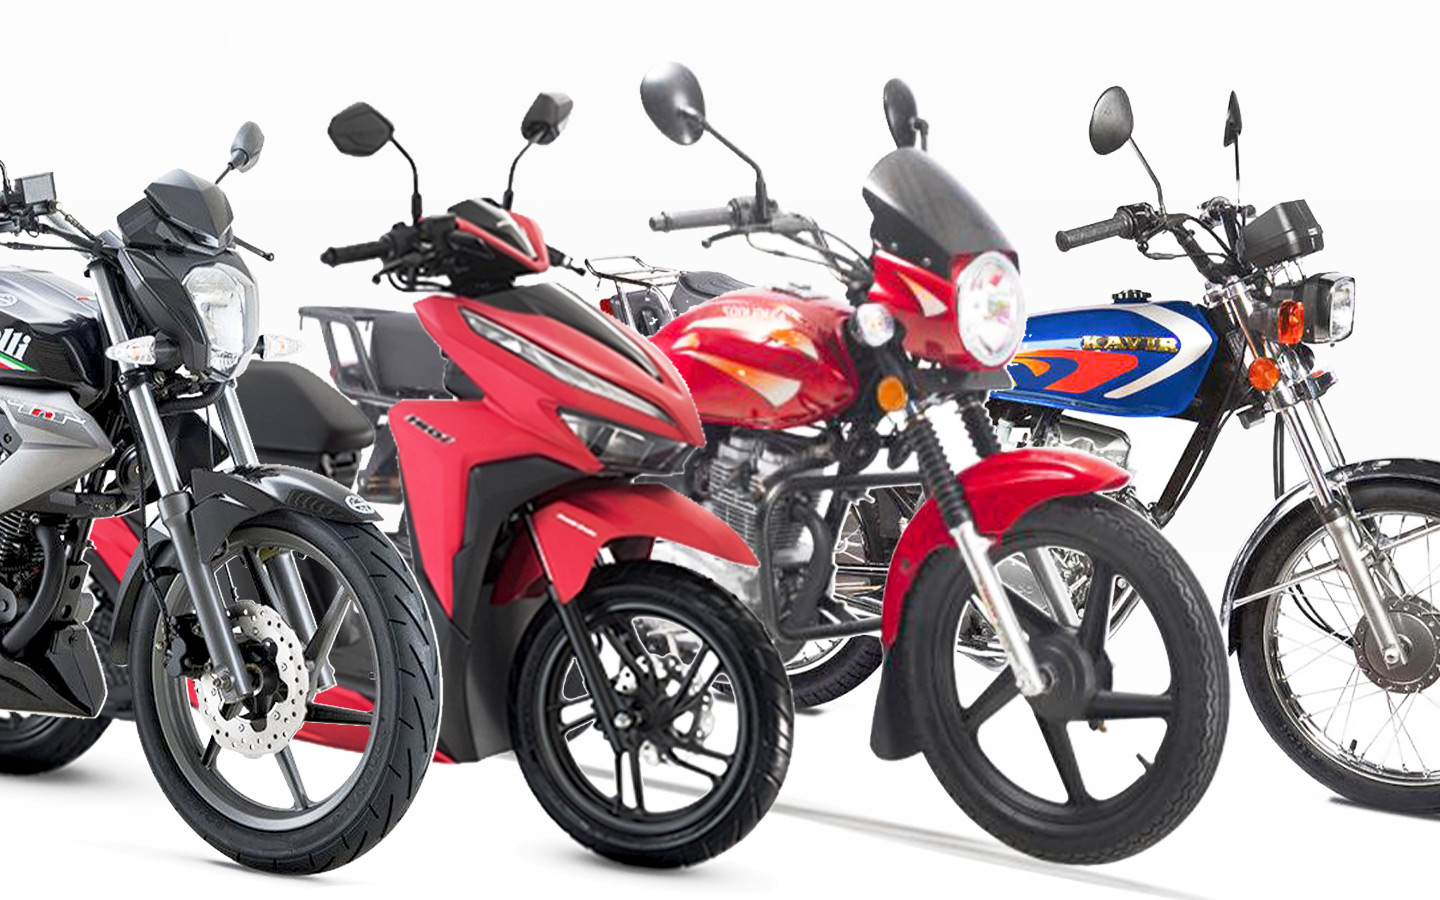 جدیدترین قیمت انواع موتورسیکلت خارجی و ایرانی در بازار+ جدول مدل های پرفروش